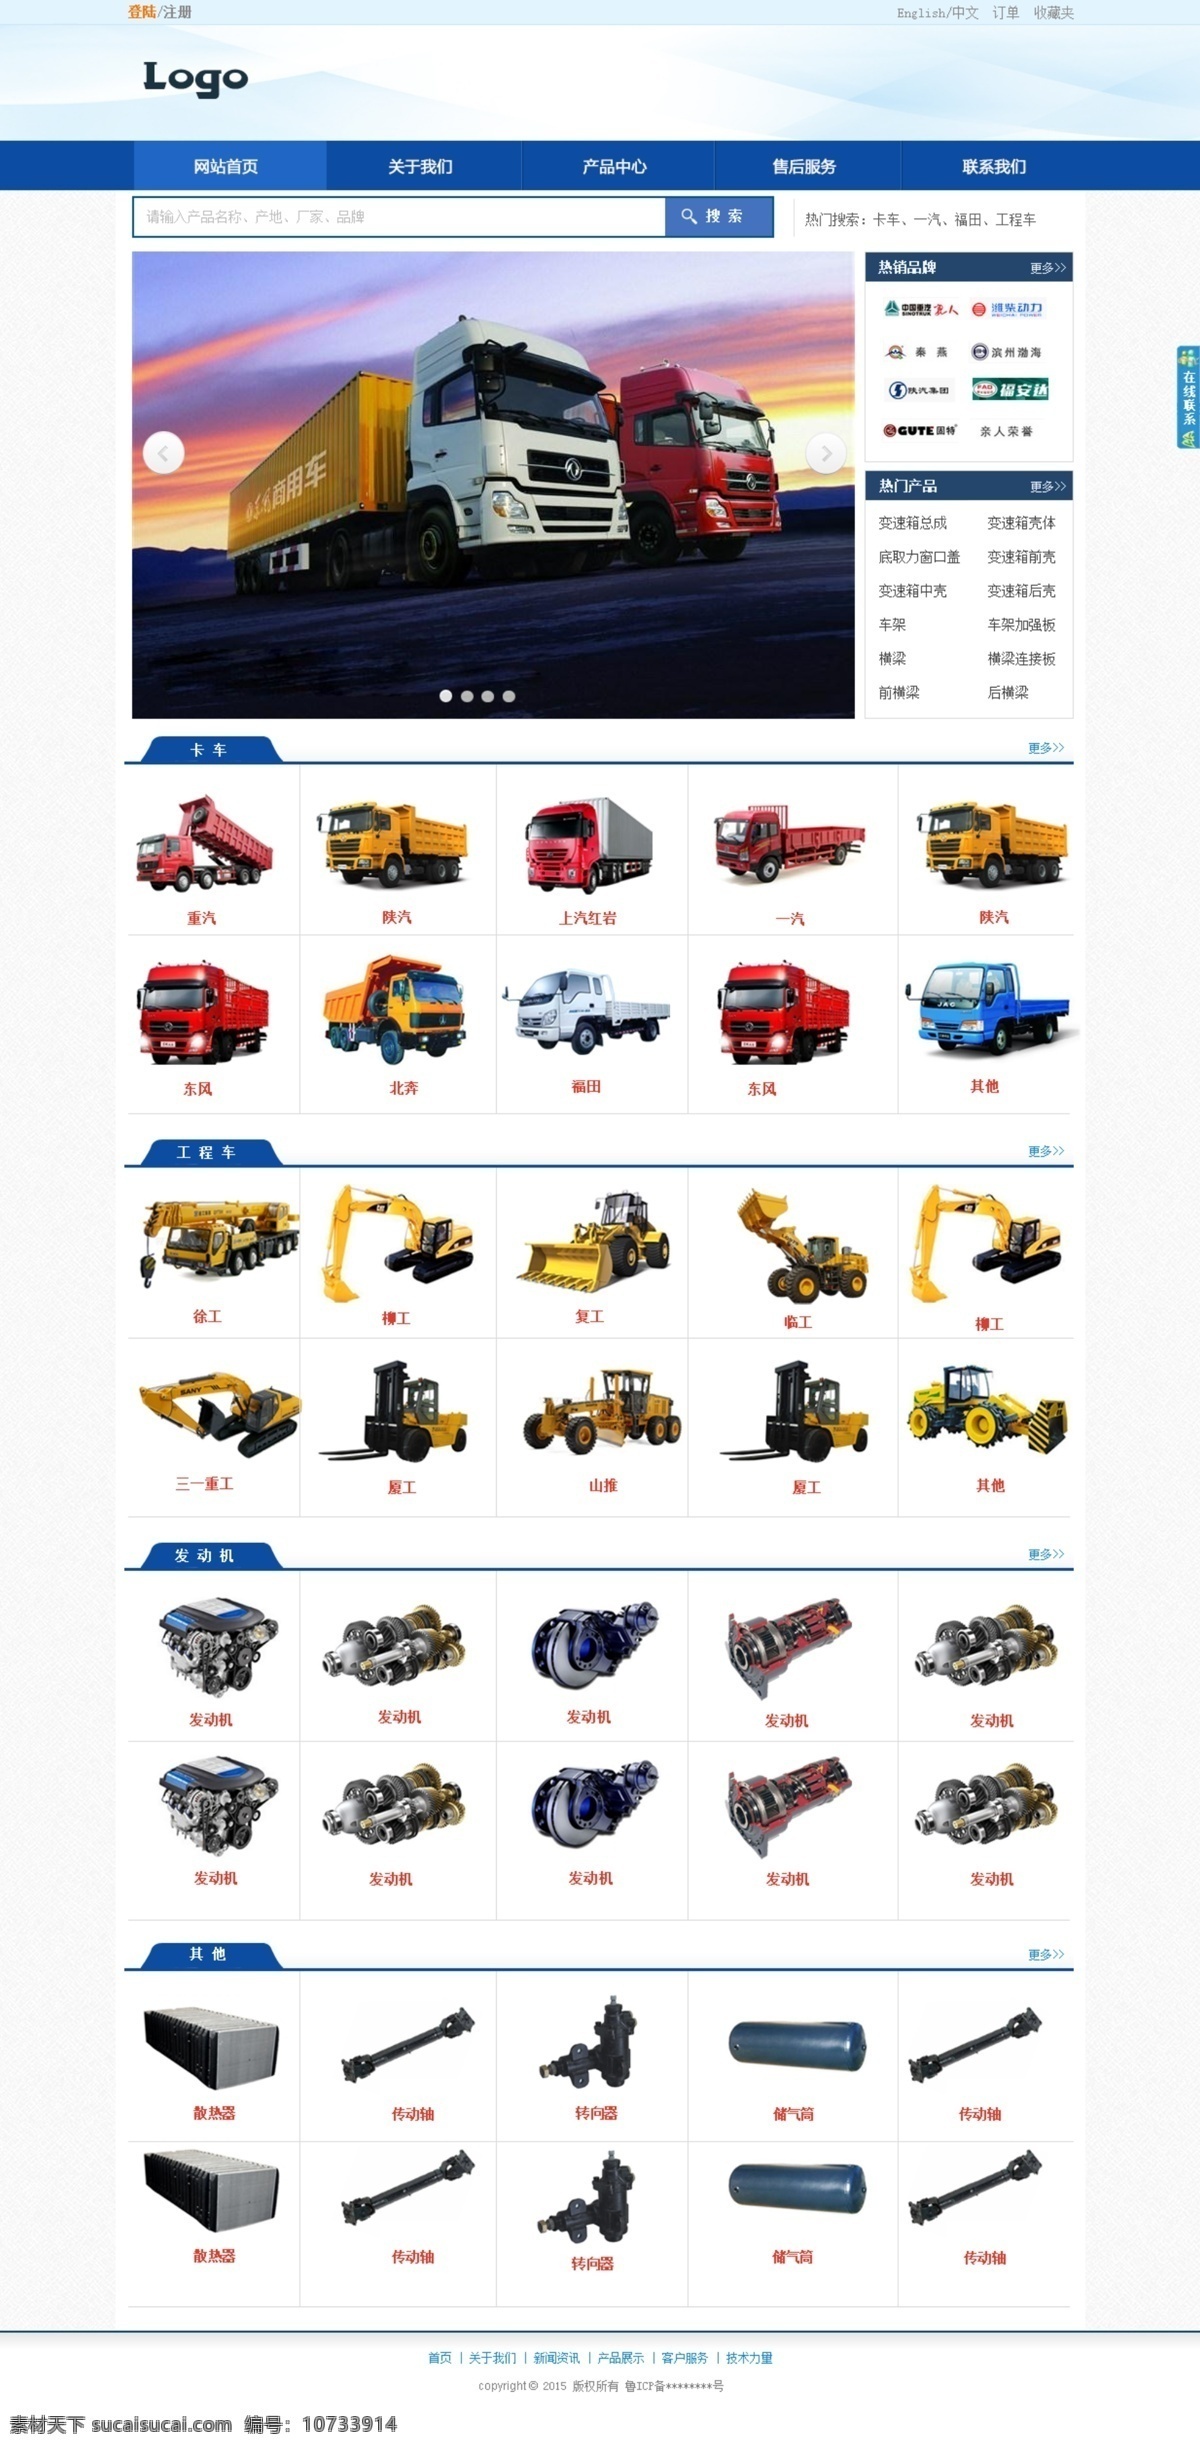 机械工程 网站设计 汽车 重汽 首页设计 卡车 工程车 发动机 网站模板 web 界面设计 中文模板